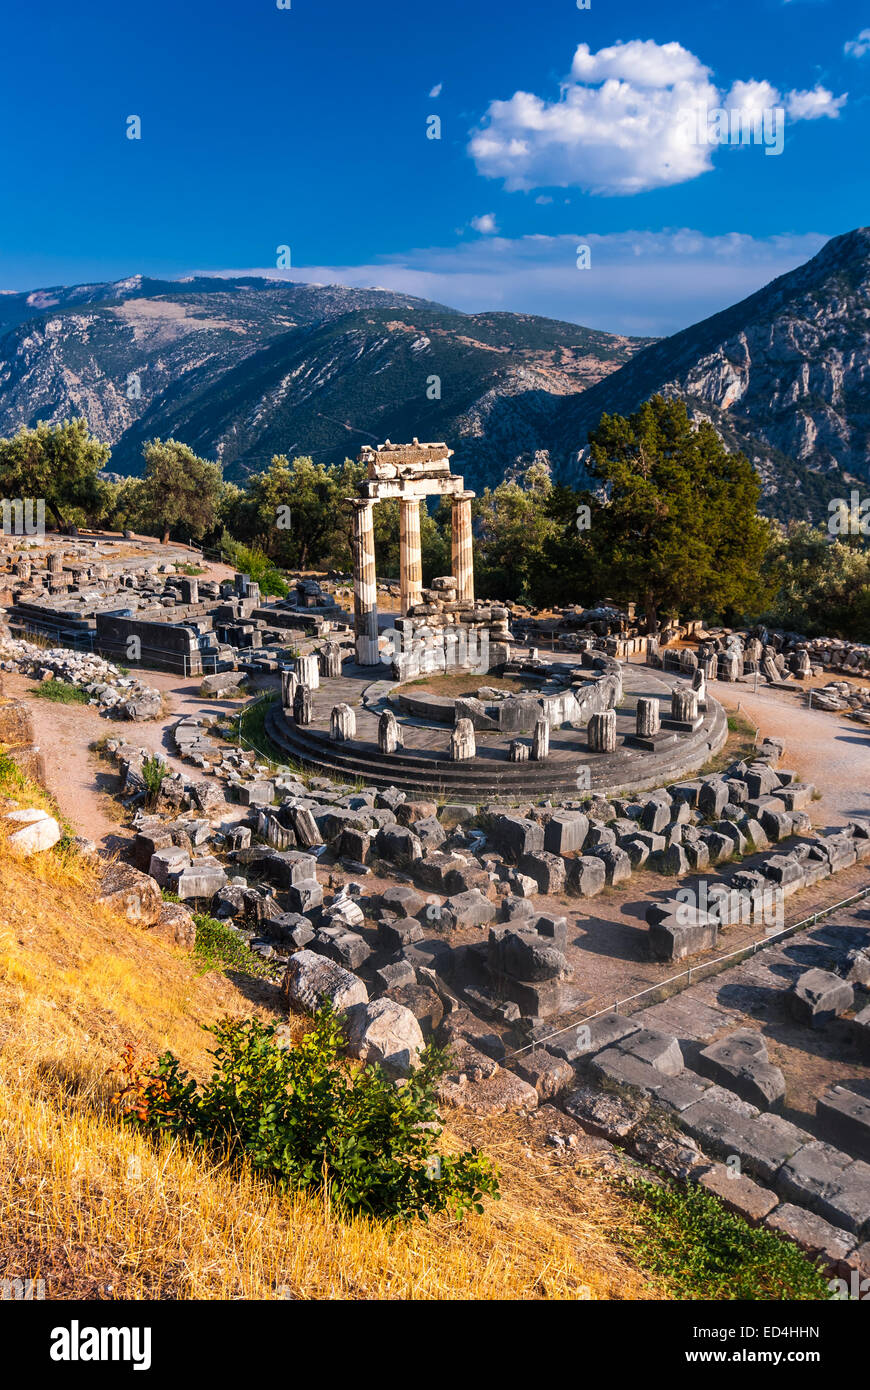 Delphi, Griechenland. Tholos Tempel, Heiligtum der Athena Pronaia, 360 v. Chr. gebaut. Antiken griechischen Zivilisation. Stockfoto